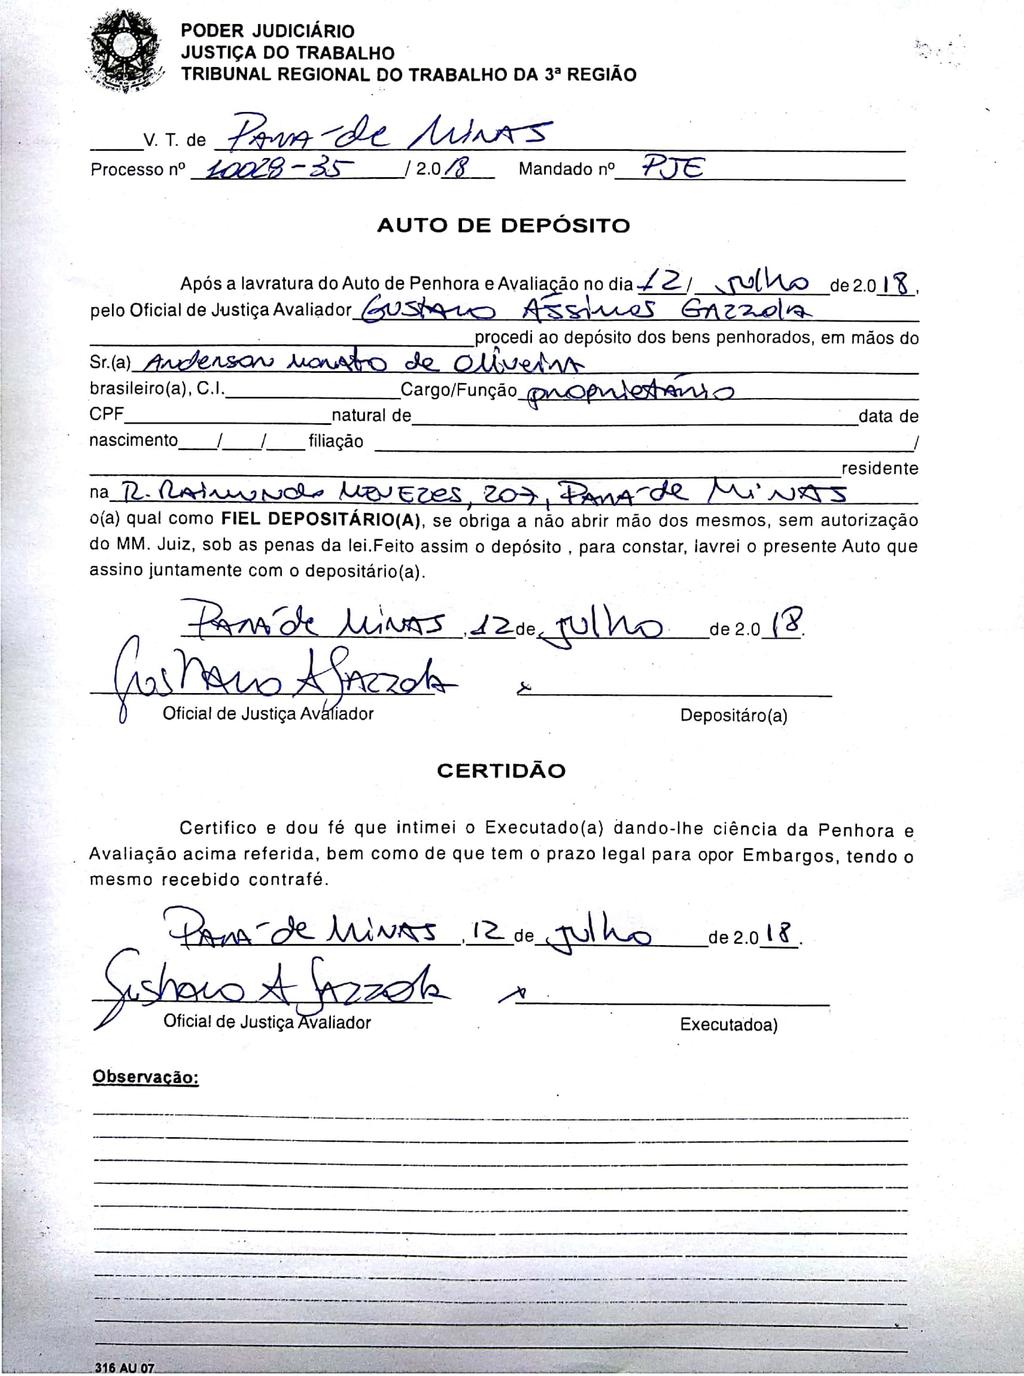 Documento assinado pelo Shodo Scanned by CamScanner Assinado eletronicamente. A Certificação Digital pertence a: GUSTAVO ASSIMOS GAZZOLA https://pje.trt3.jus.